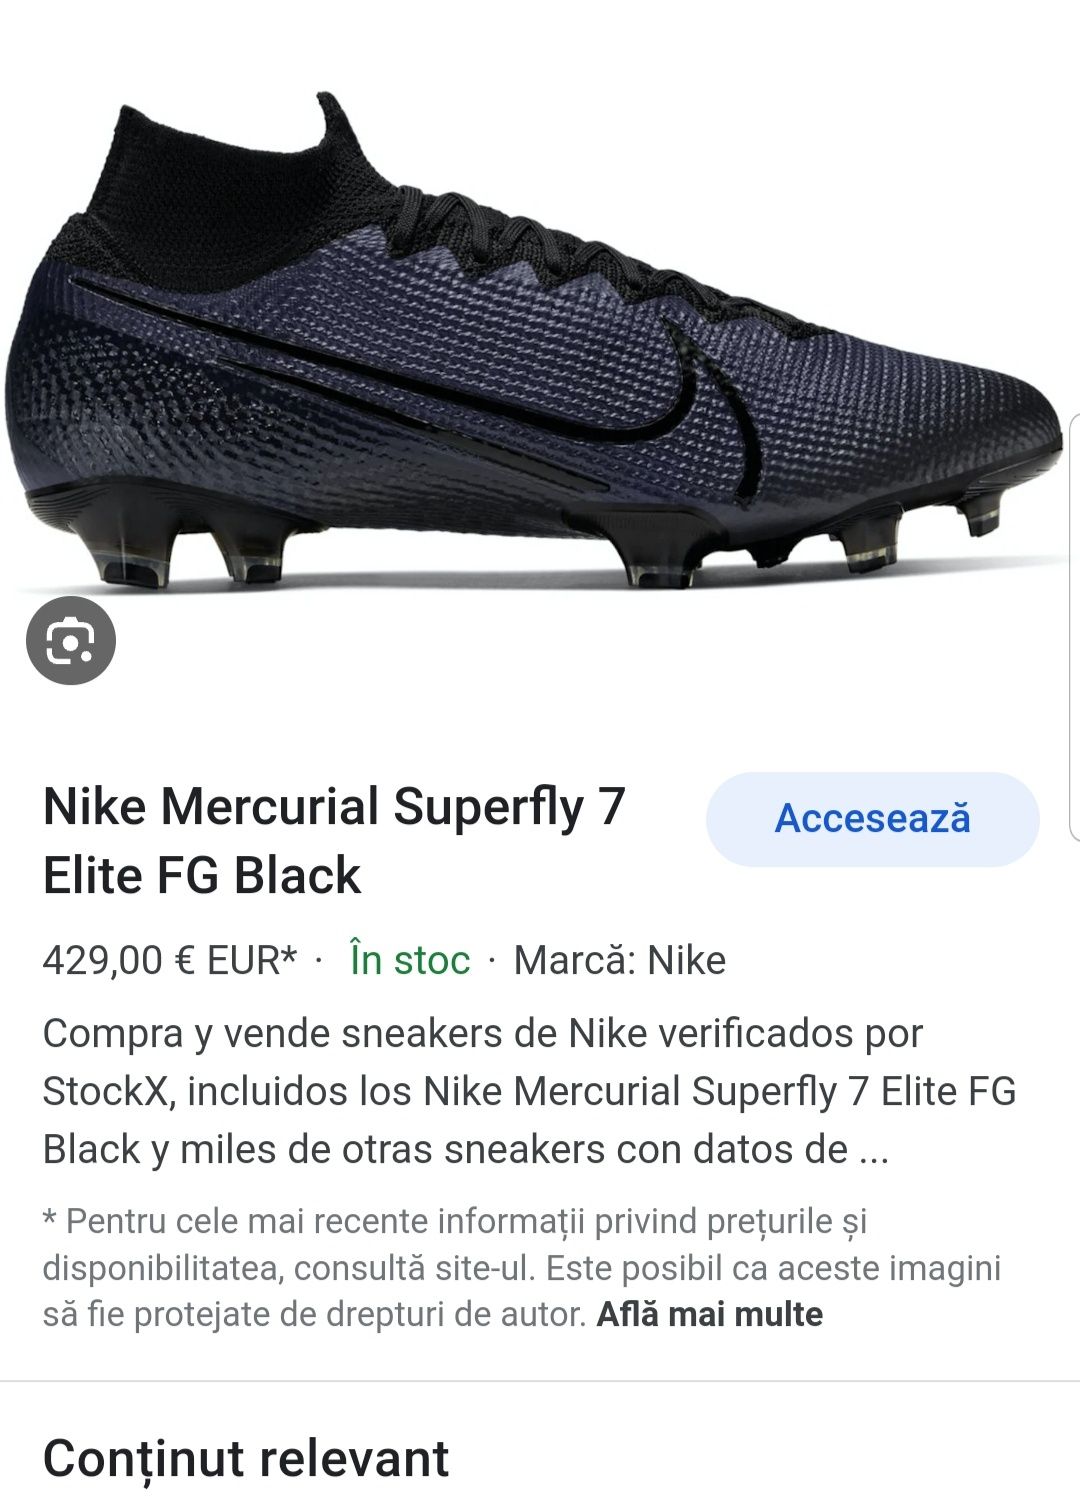 Nike Mercurial Superfly 7 Academy MG Kinetic Negru, nr. 37, 5 EU, NOU